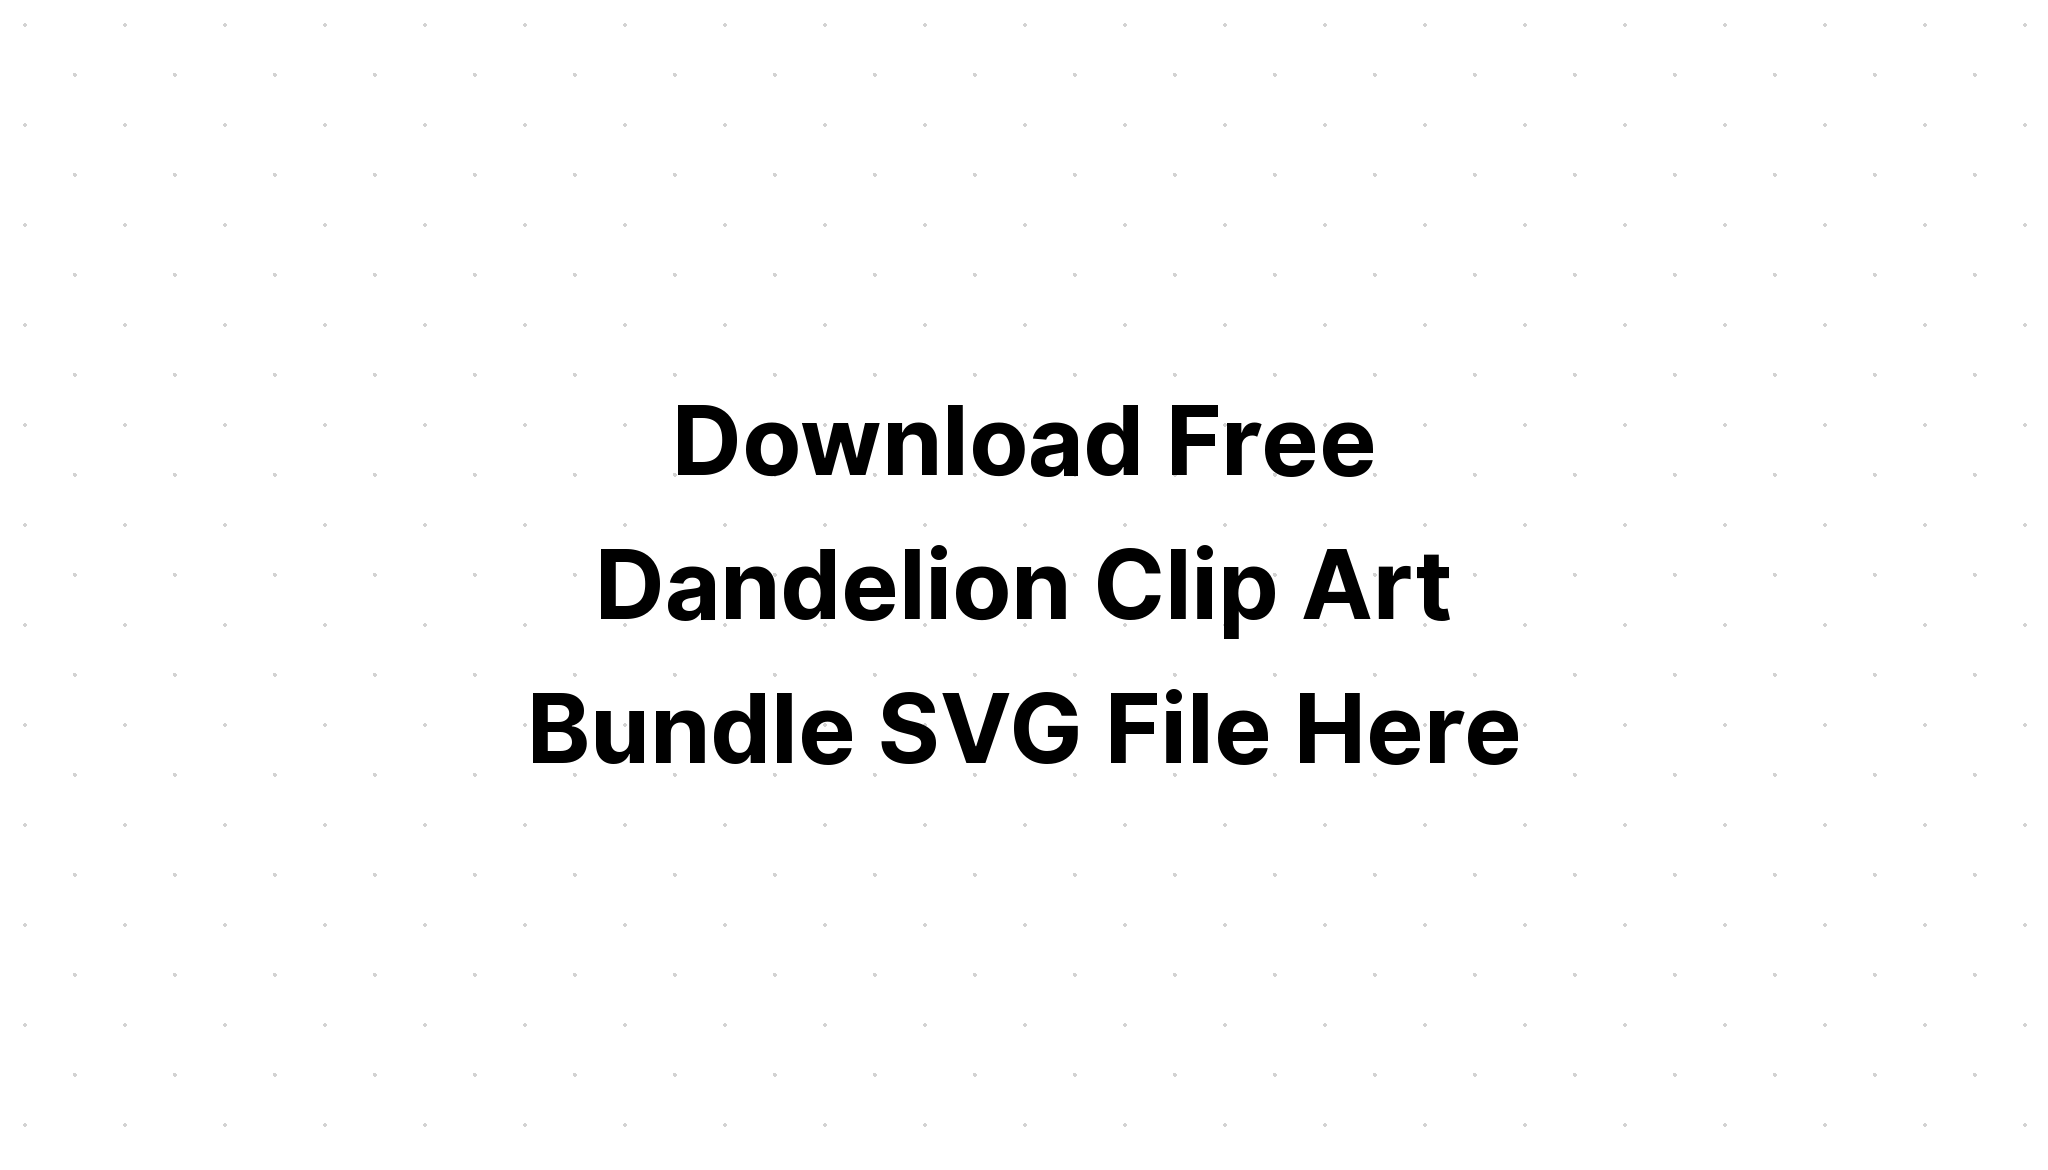 Download Free Svg Dandelion Clip Art Bundle Svg Dxf File